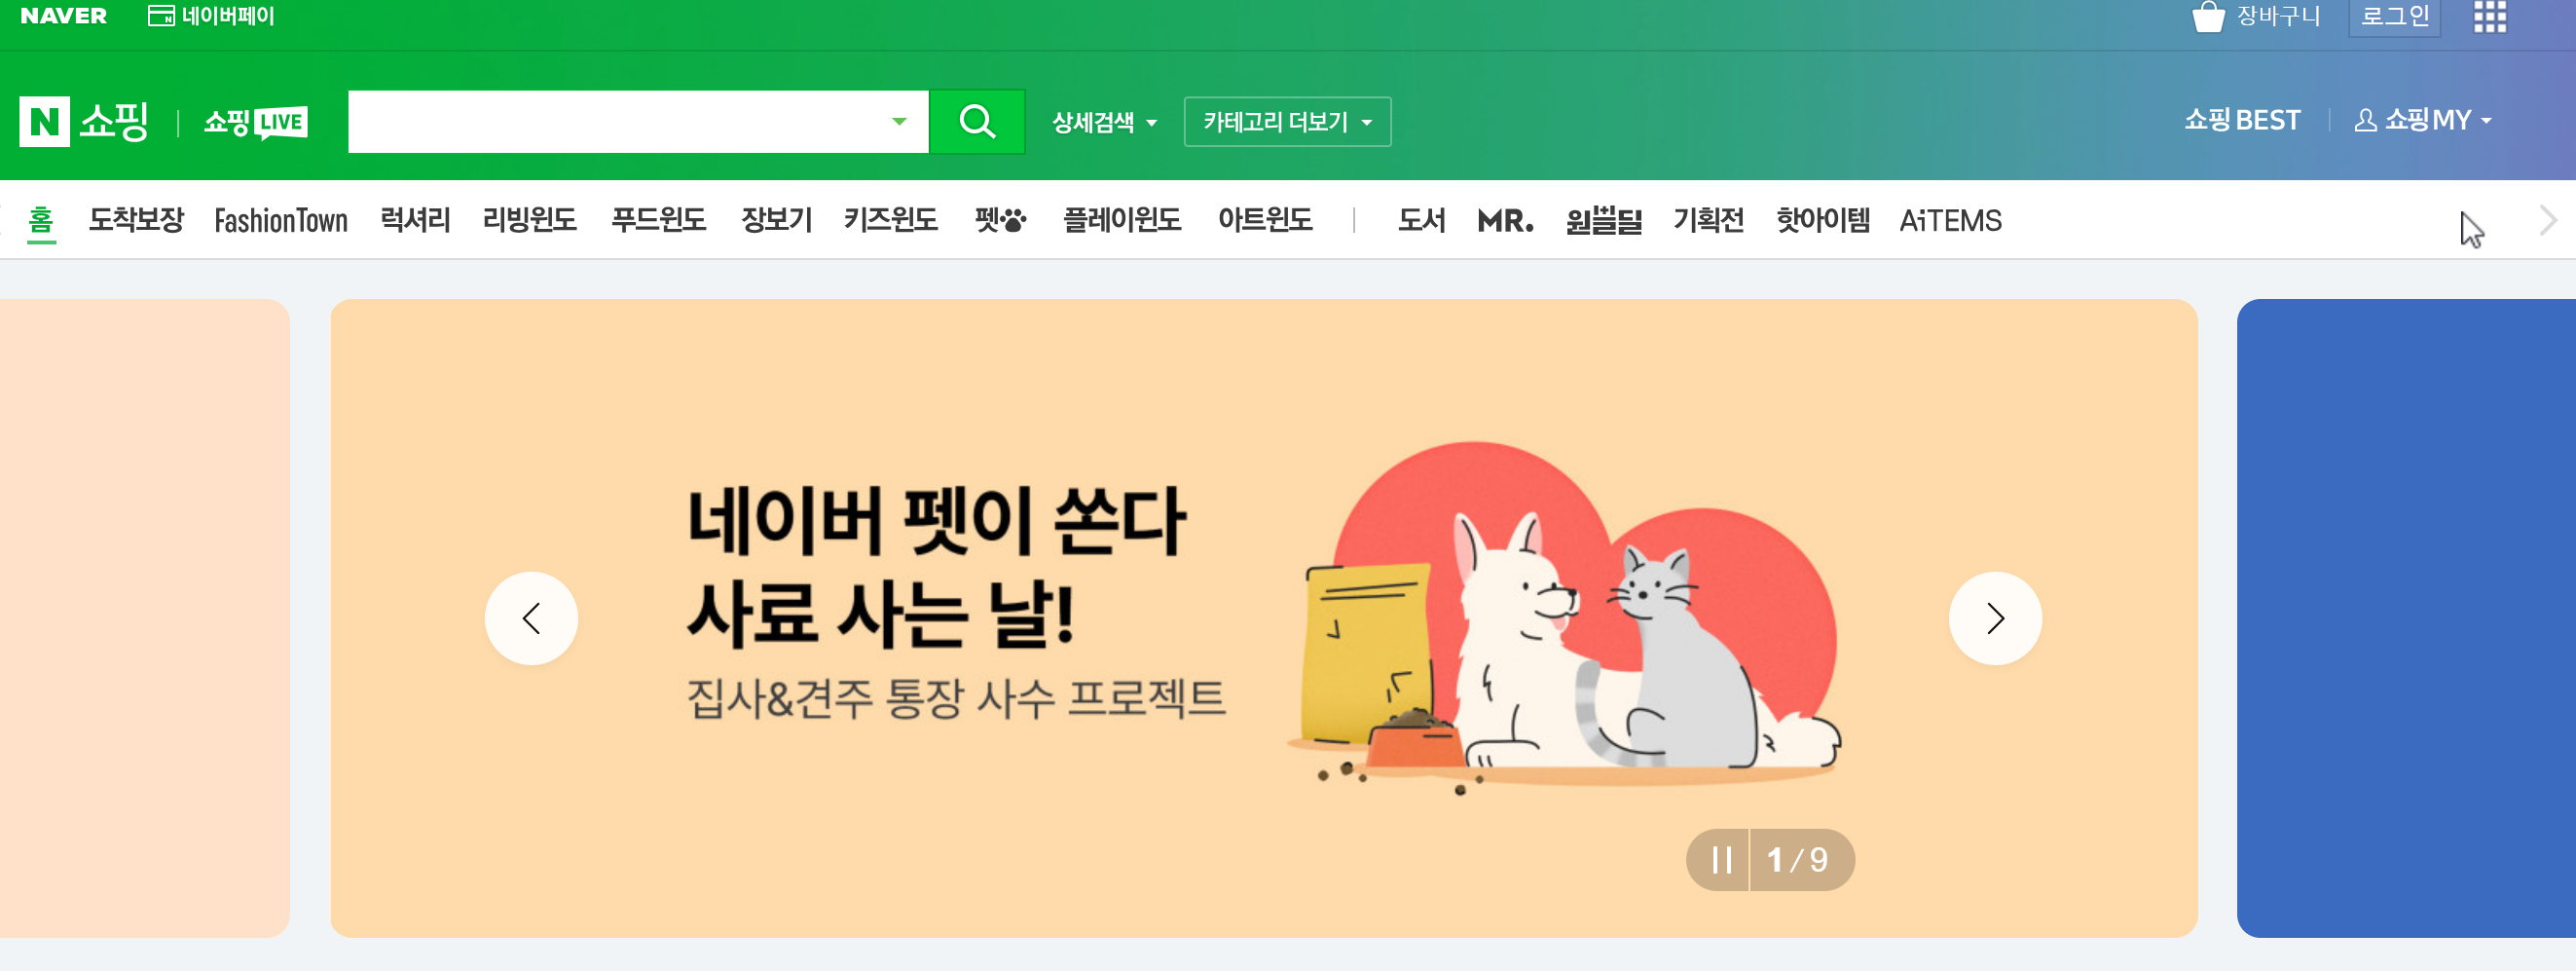 韩国跨境电商平台Naver